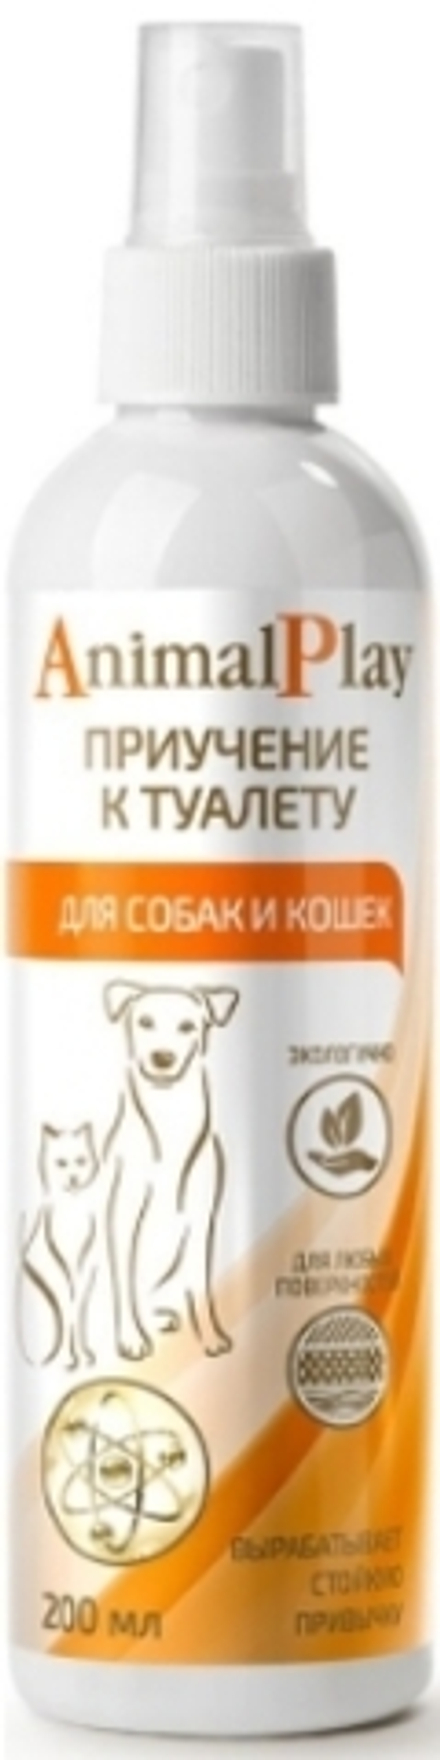 Спрей Animal Play 200мл Приучение к туалету для собак и кошек